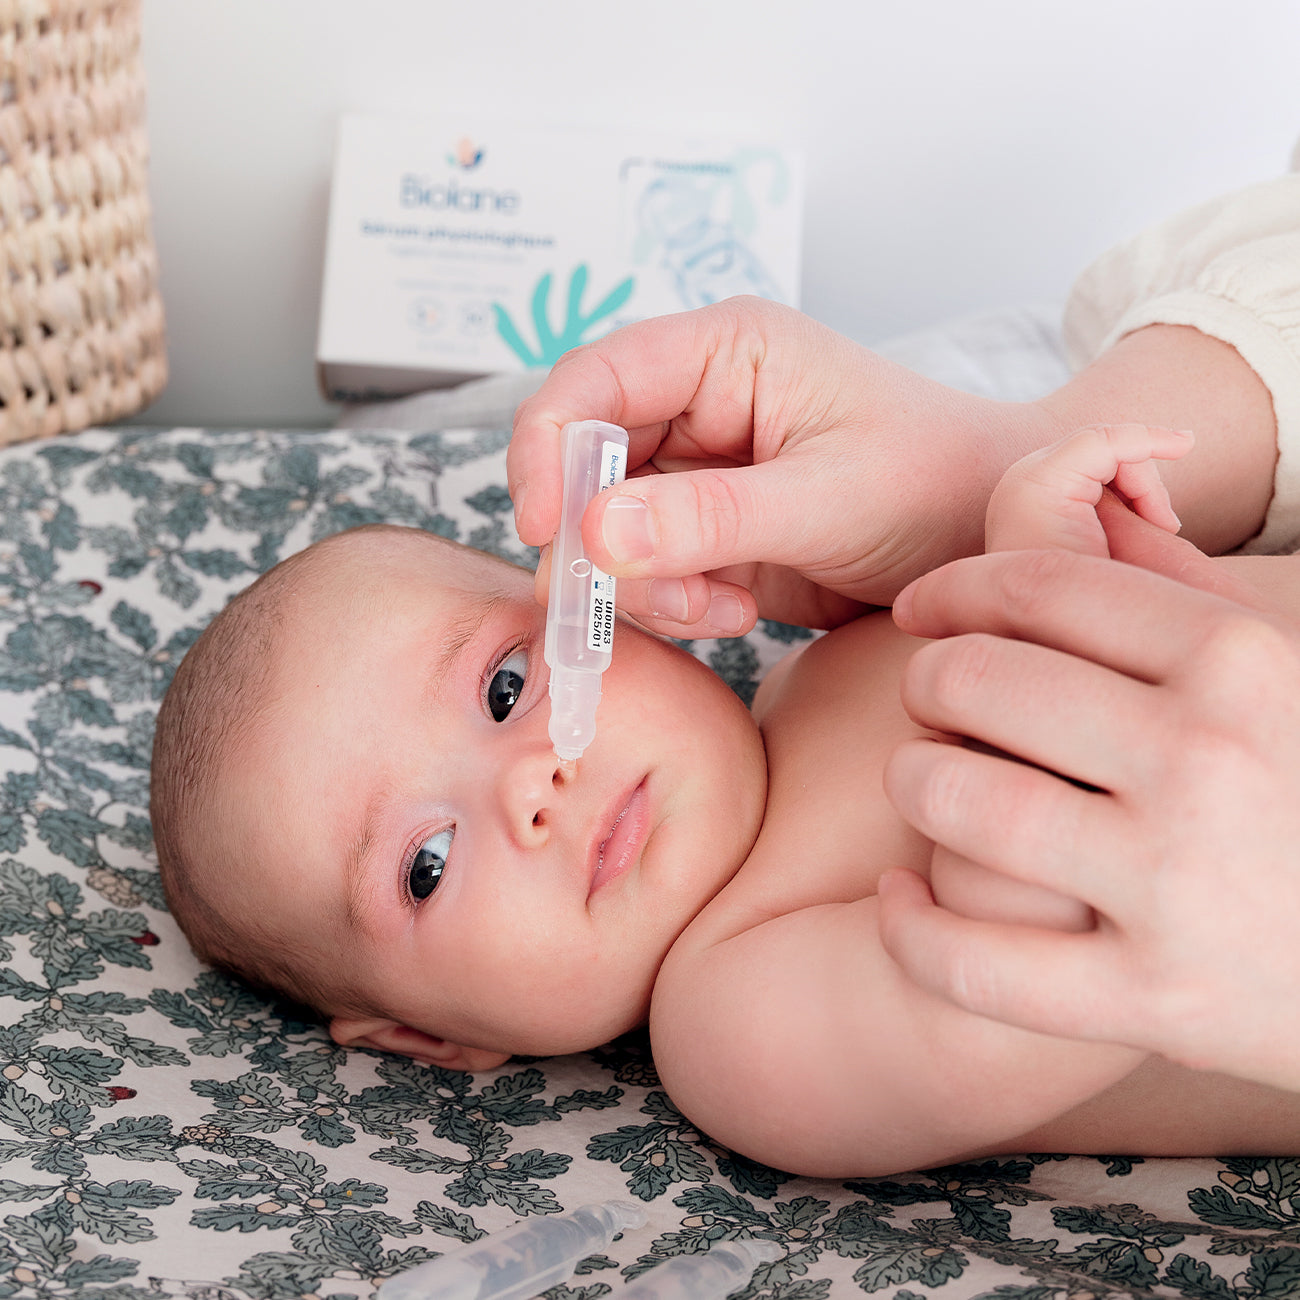 Humer Mouche Bébé: évacuer les sécrétions nasales des narines du bébé